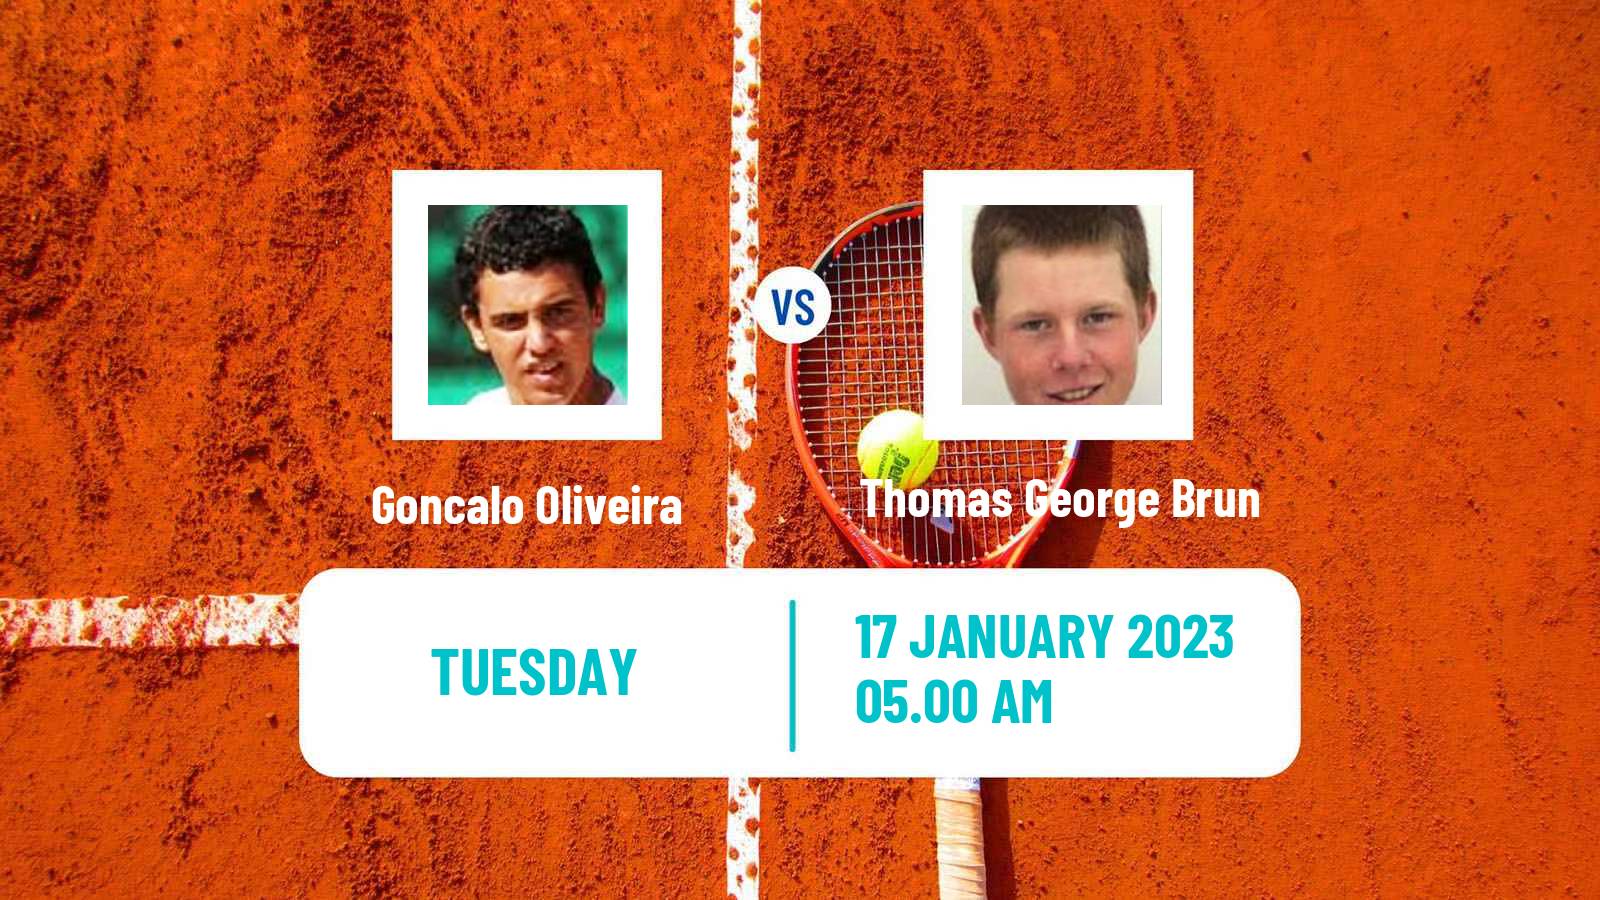 Tennis ITF Tournaments Goncalo Oliveira - Thomas George Brun